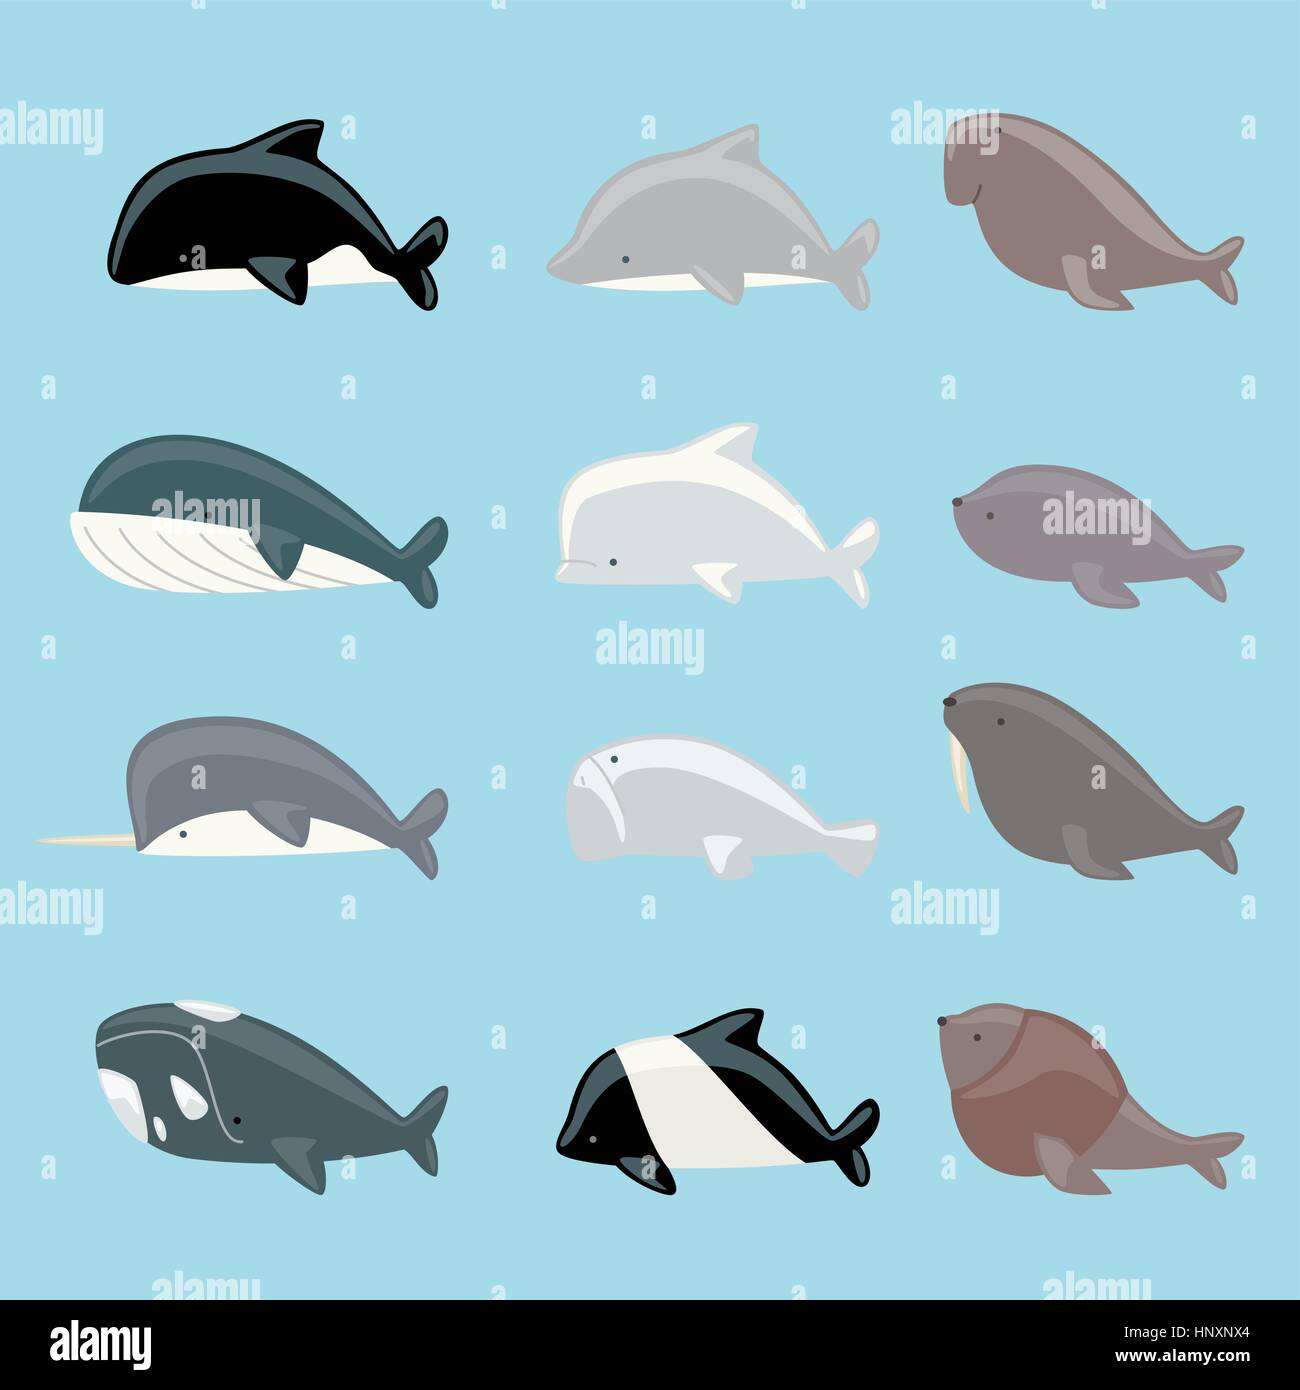 Les mammifères marins icon collection, avec les baleines, les dauphins, les lamantins, le béluga, l'orque, le narval, le morse, la baleine bleue, le lion de mer de l'illustration vectorielle. Illustration de Vecteur